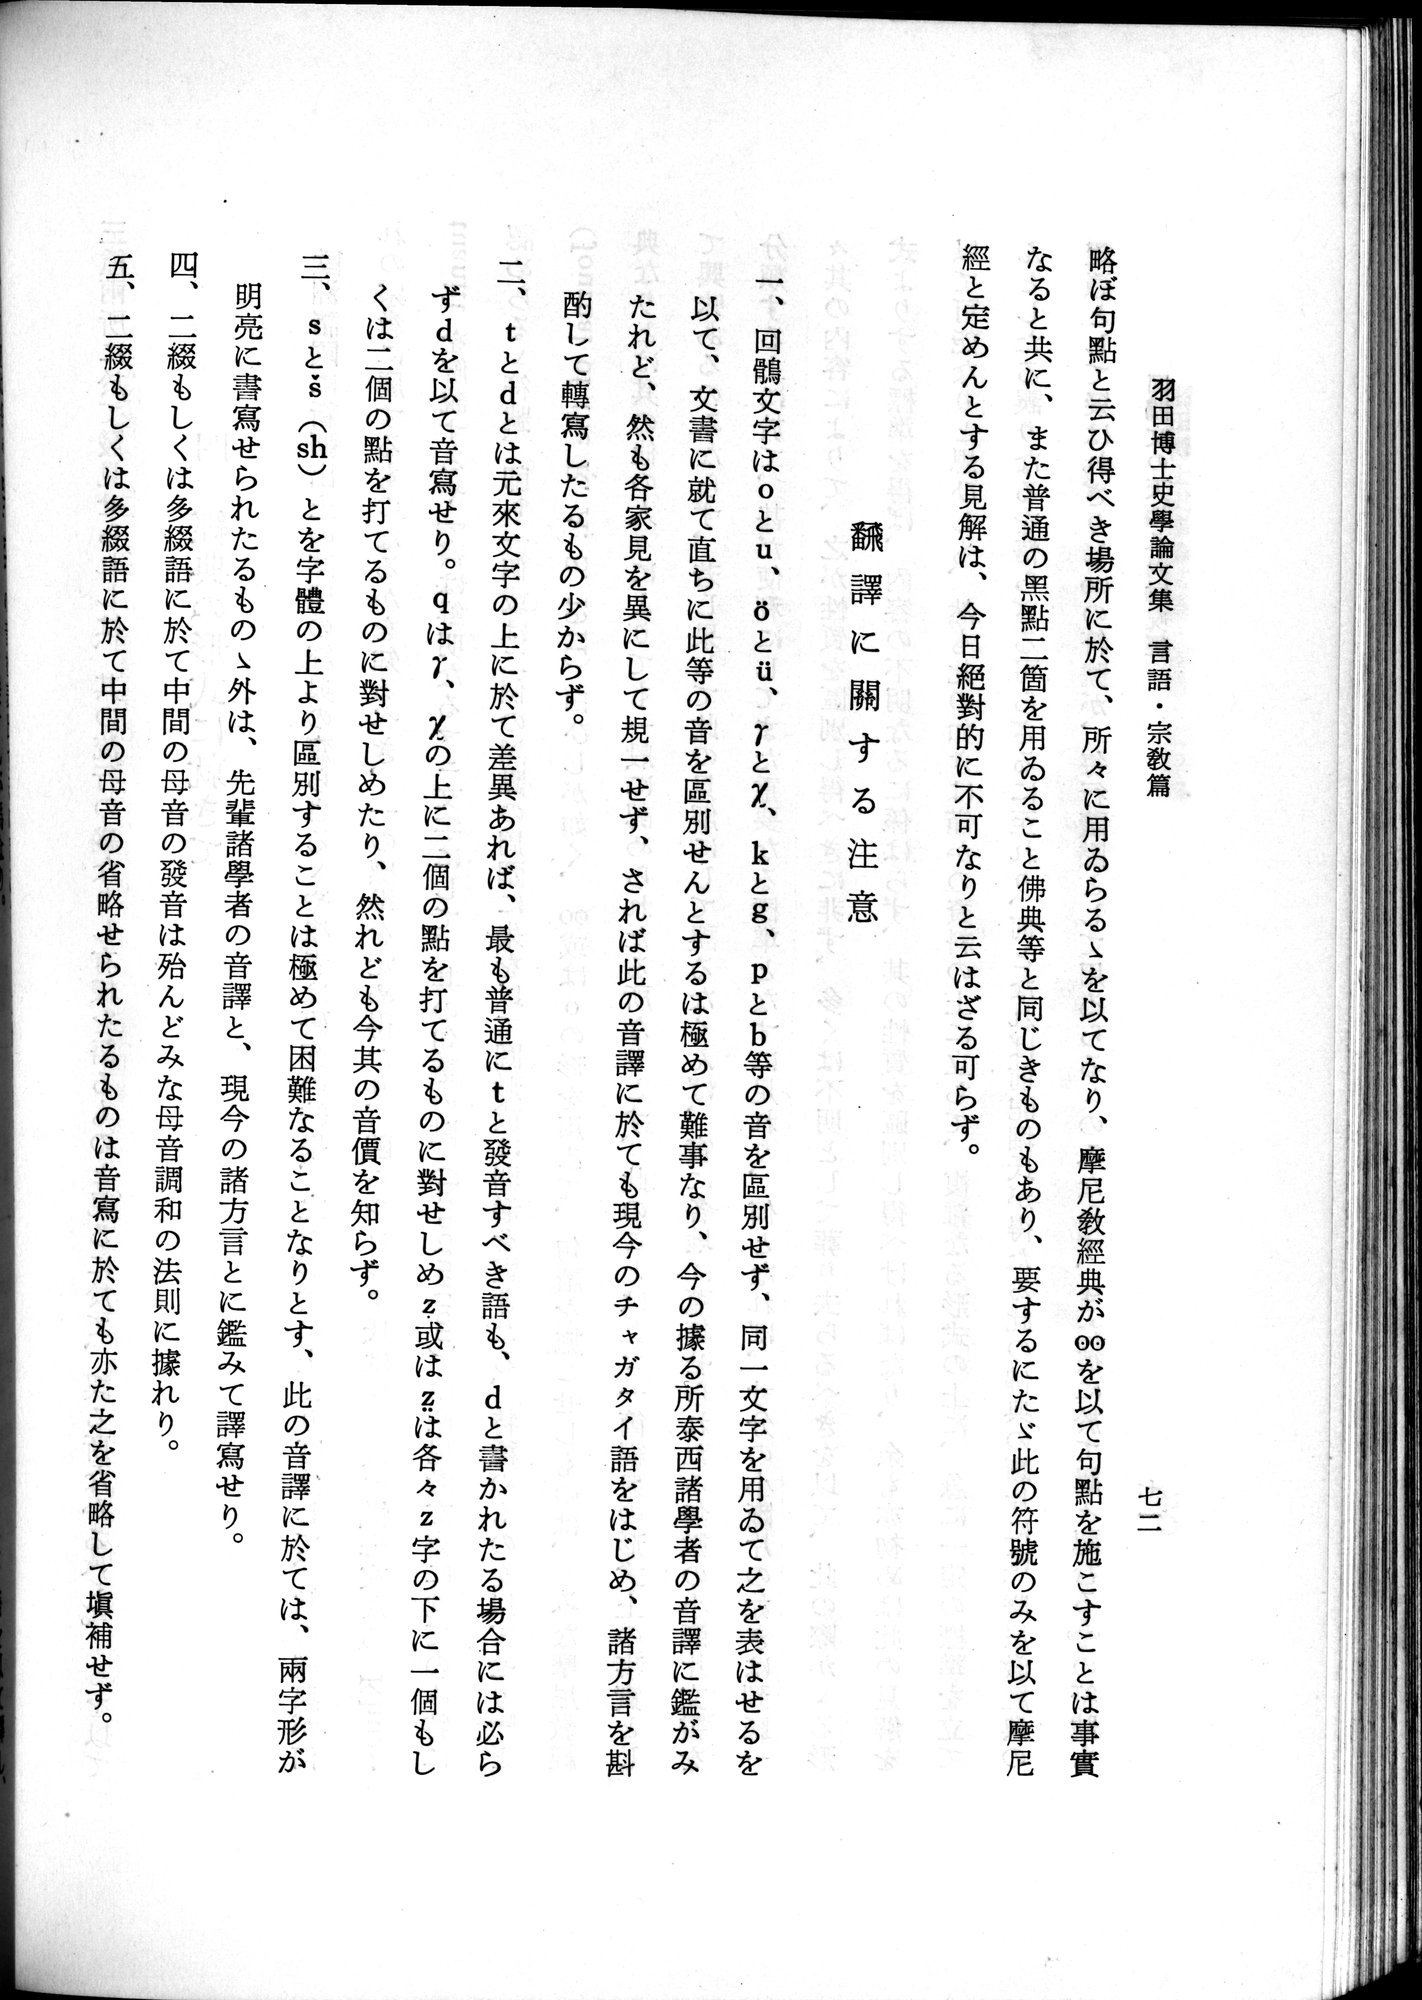 羽田博士史学論文集 : vol.2 / 134 ページ（白黒高解像度画像）